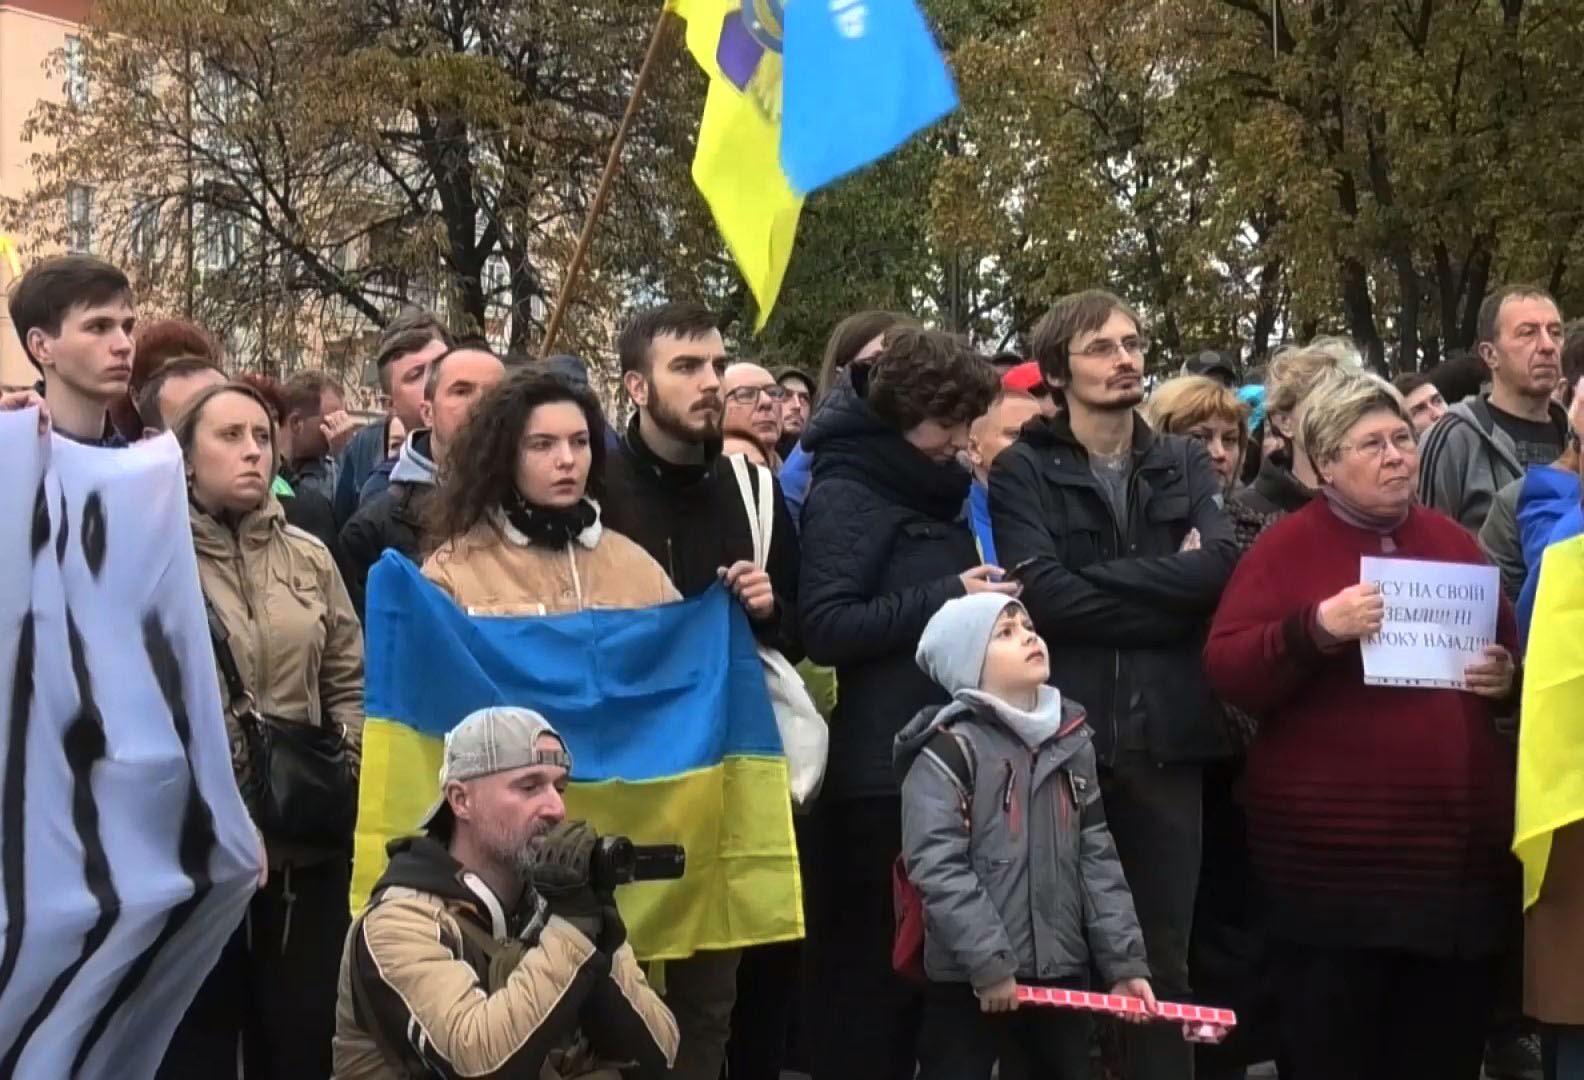 Разведение войск на Донбассе: чего боятся жители Мариуполя